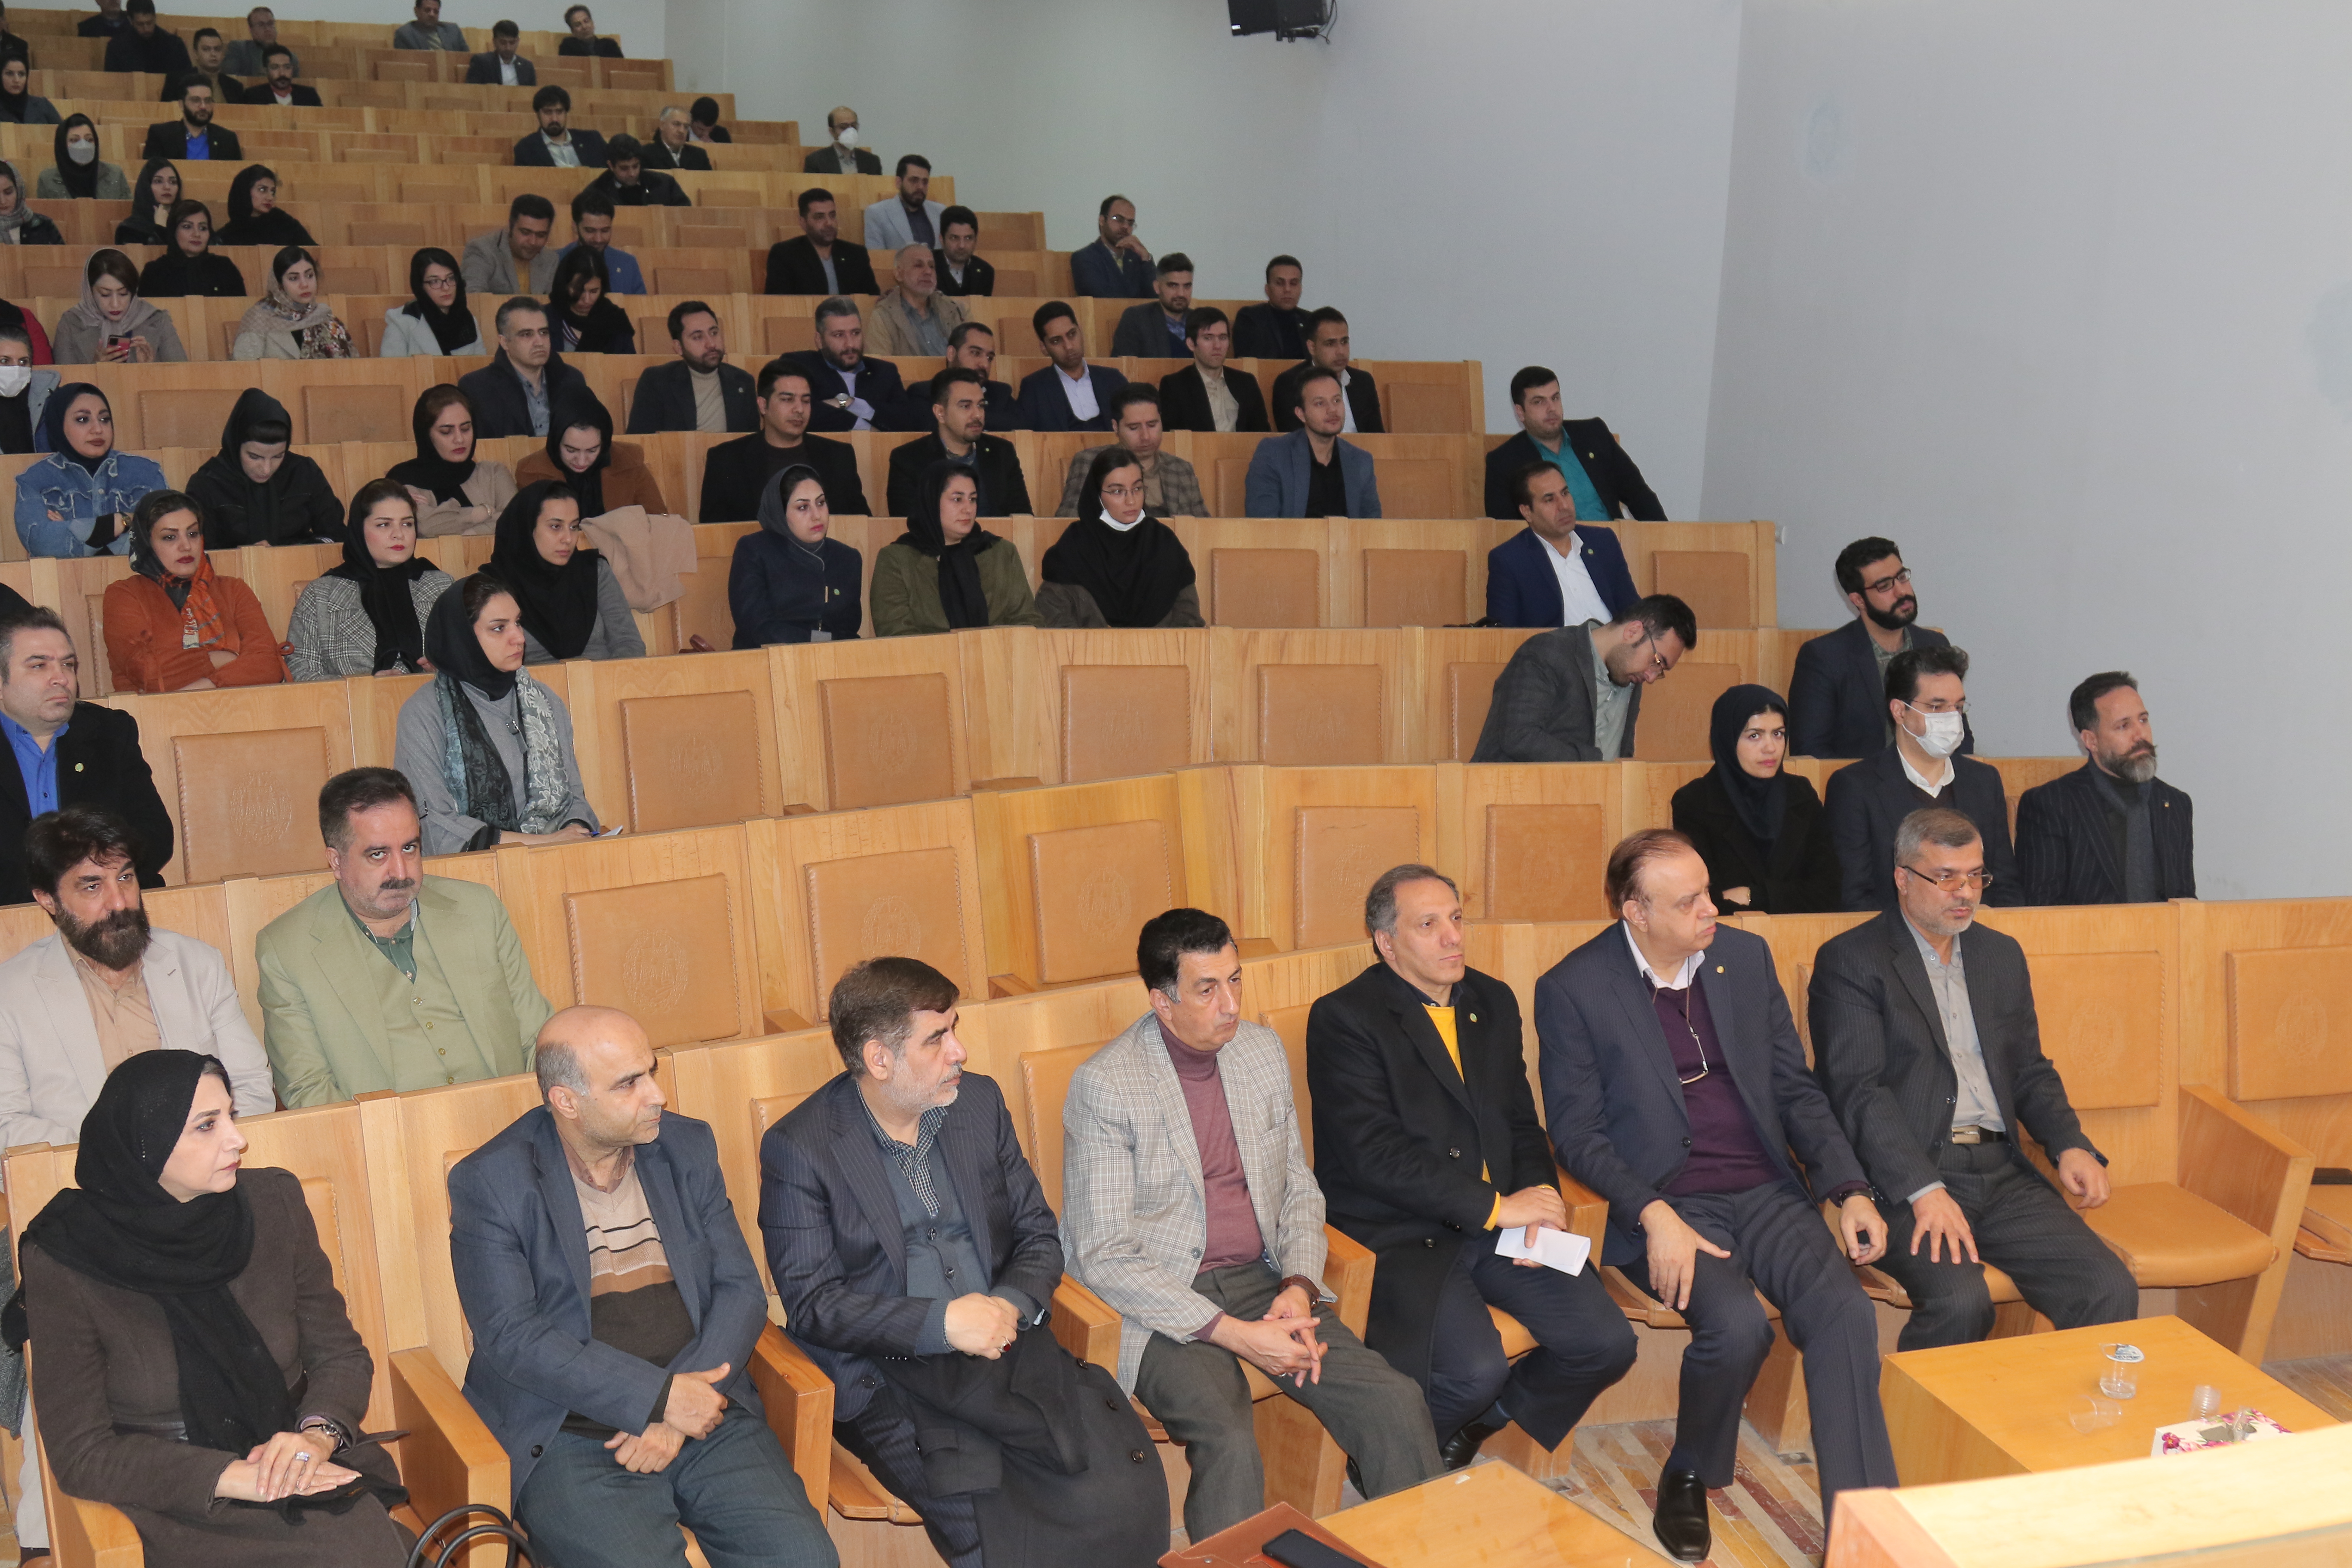 مراسم معارفه اعضای جدید کمیسیون کارآموزی کانون وکلای اصفهان و تجلیل از اعضای پیشین برگزار شد